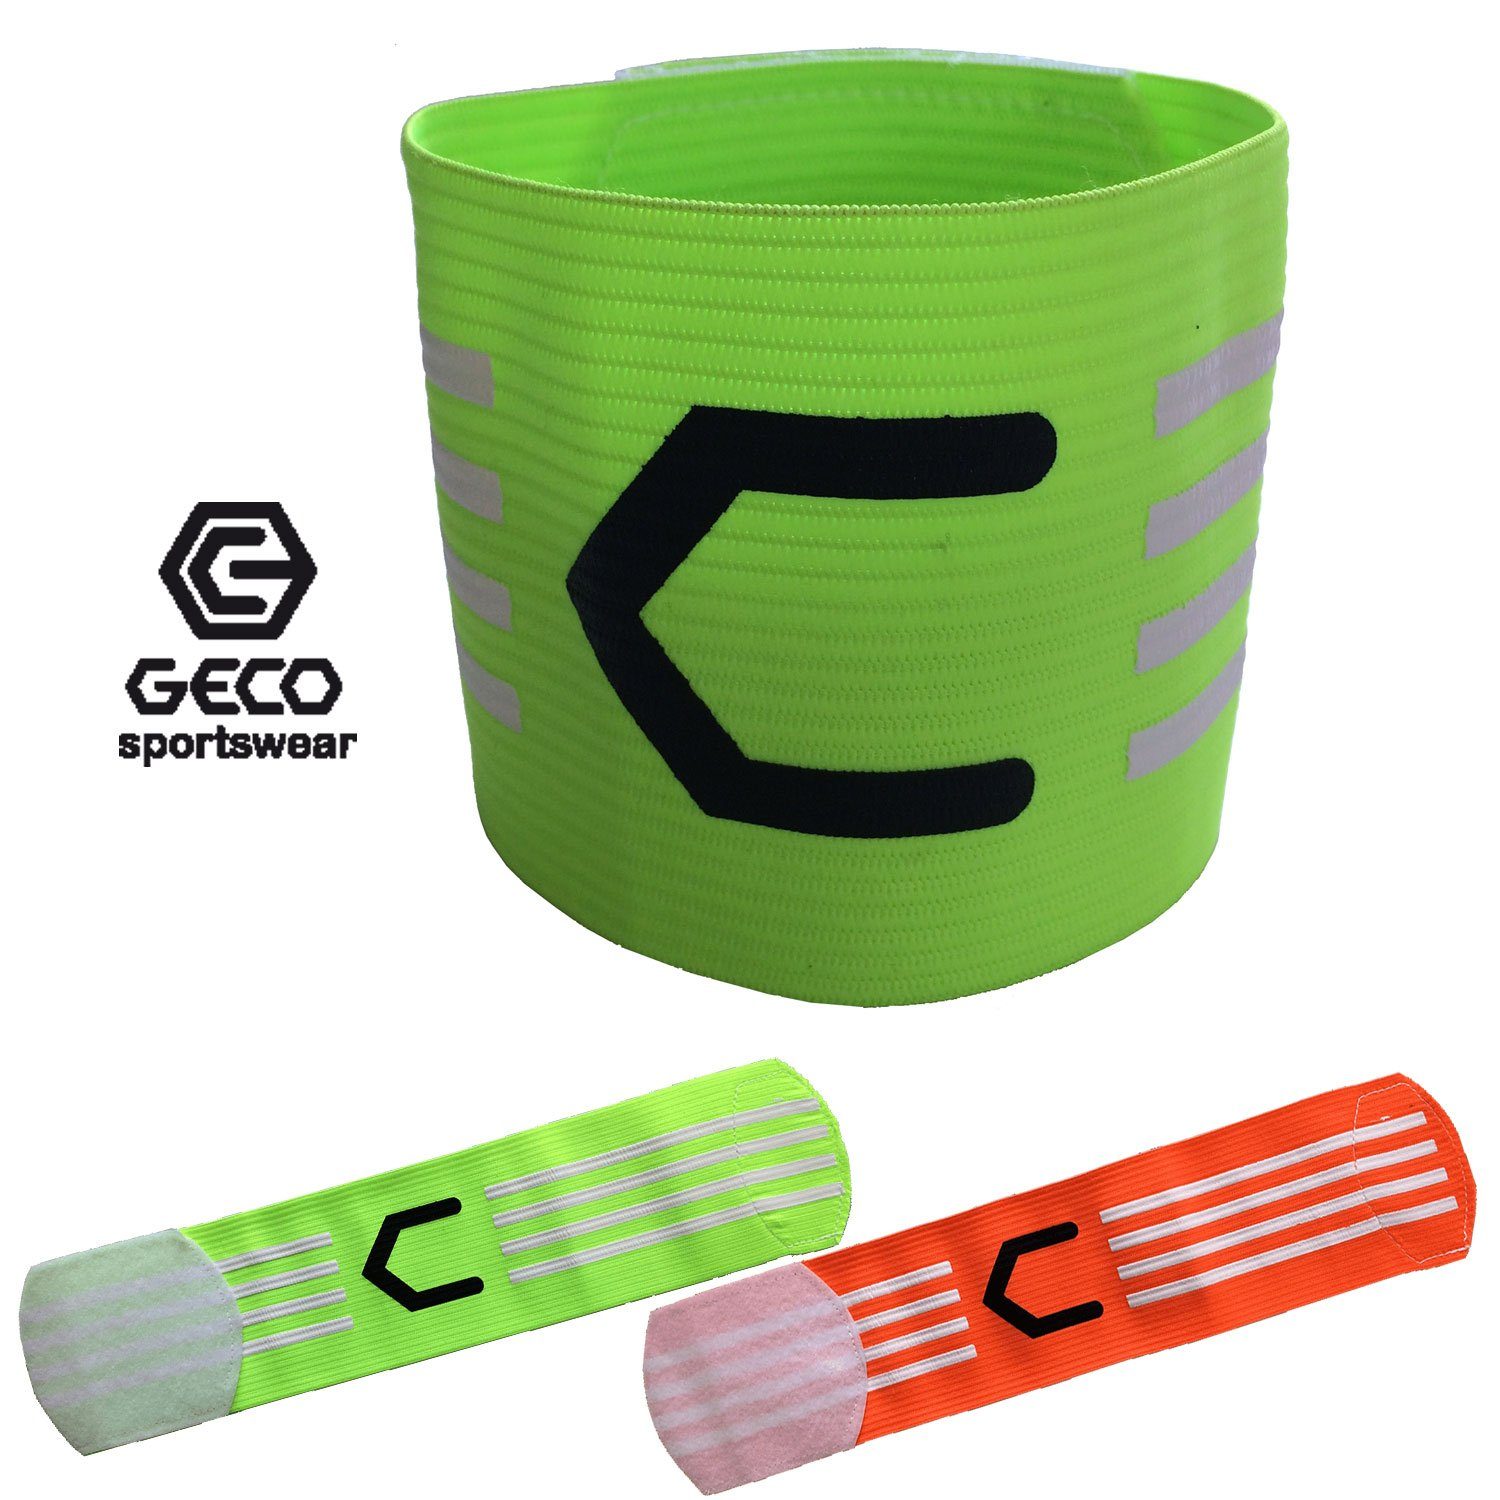 Geco Sportswear grün und Geco NEON neon Fußball orange neon oder Farben Kapitänsbinde grün orange, orange Kapitänsbinde